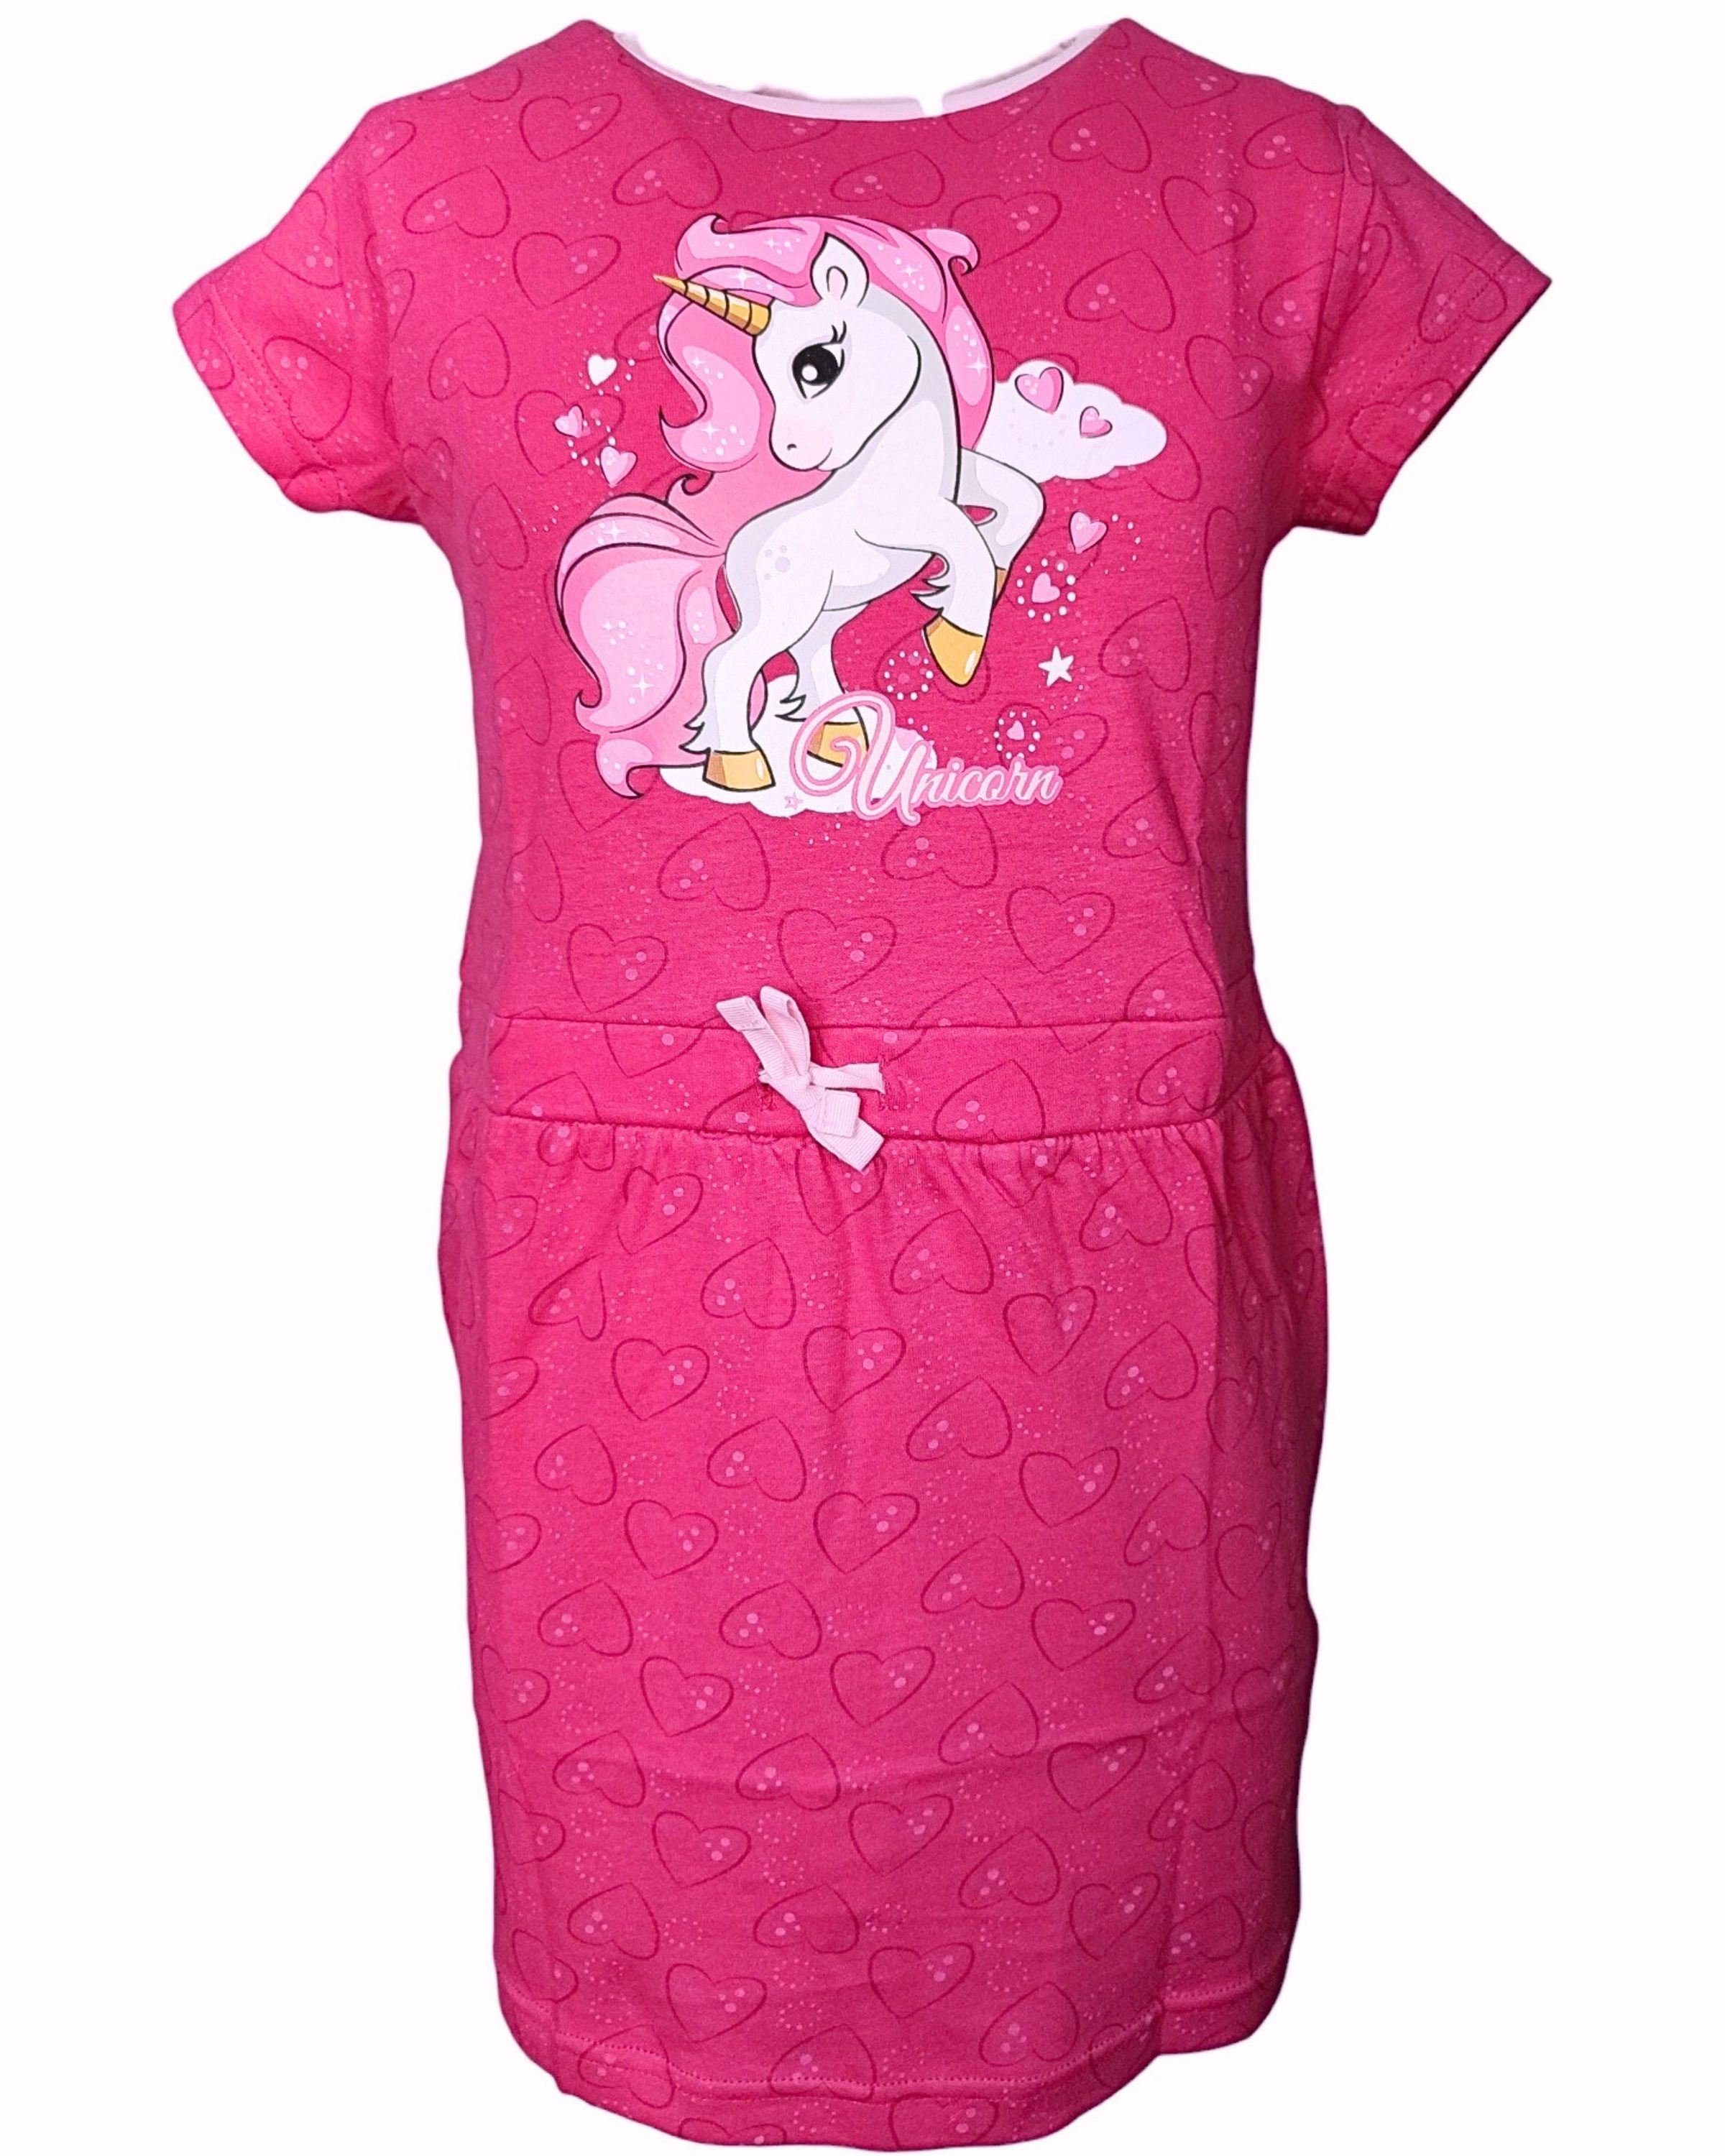 United Essentials Sommerkleid Einhorn Jerseykleid für Mädchen Gr. 98-128 cm Pink